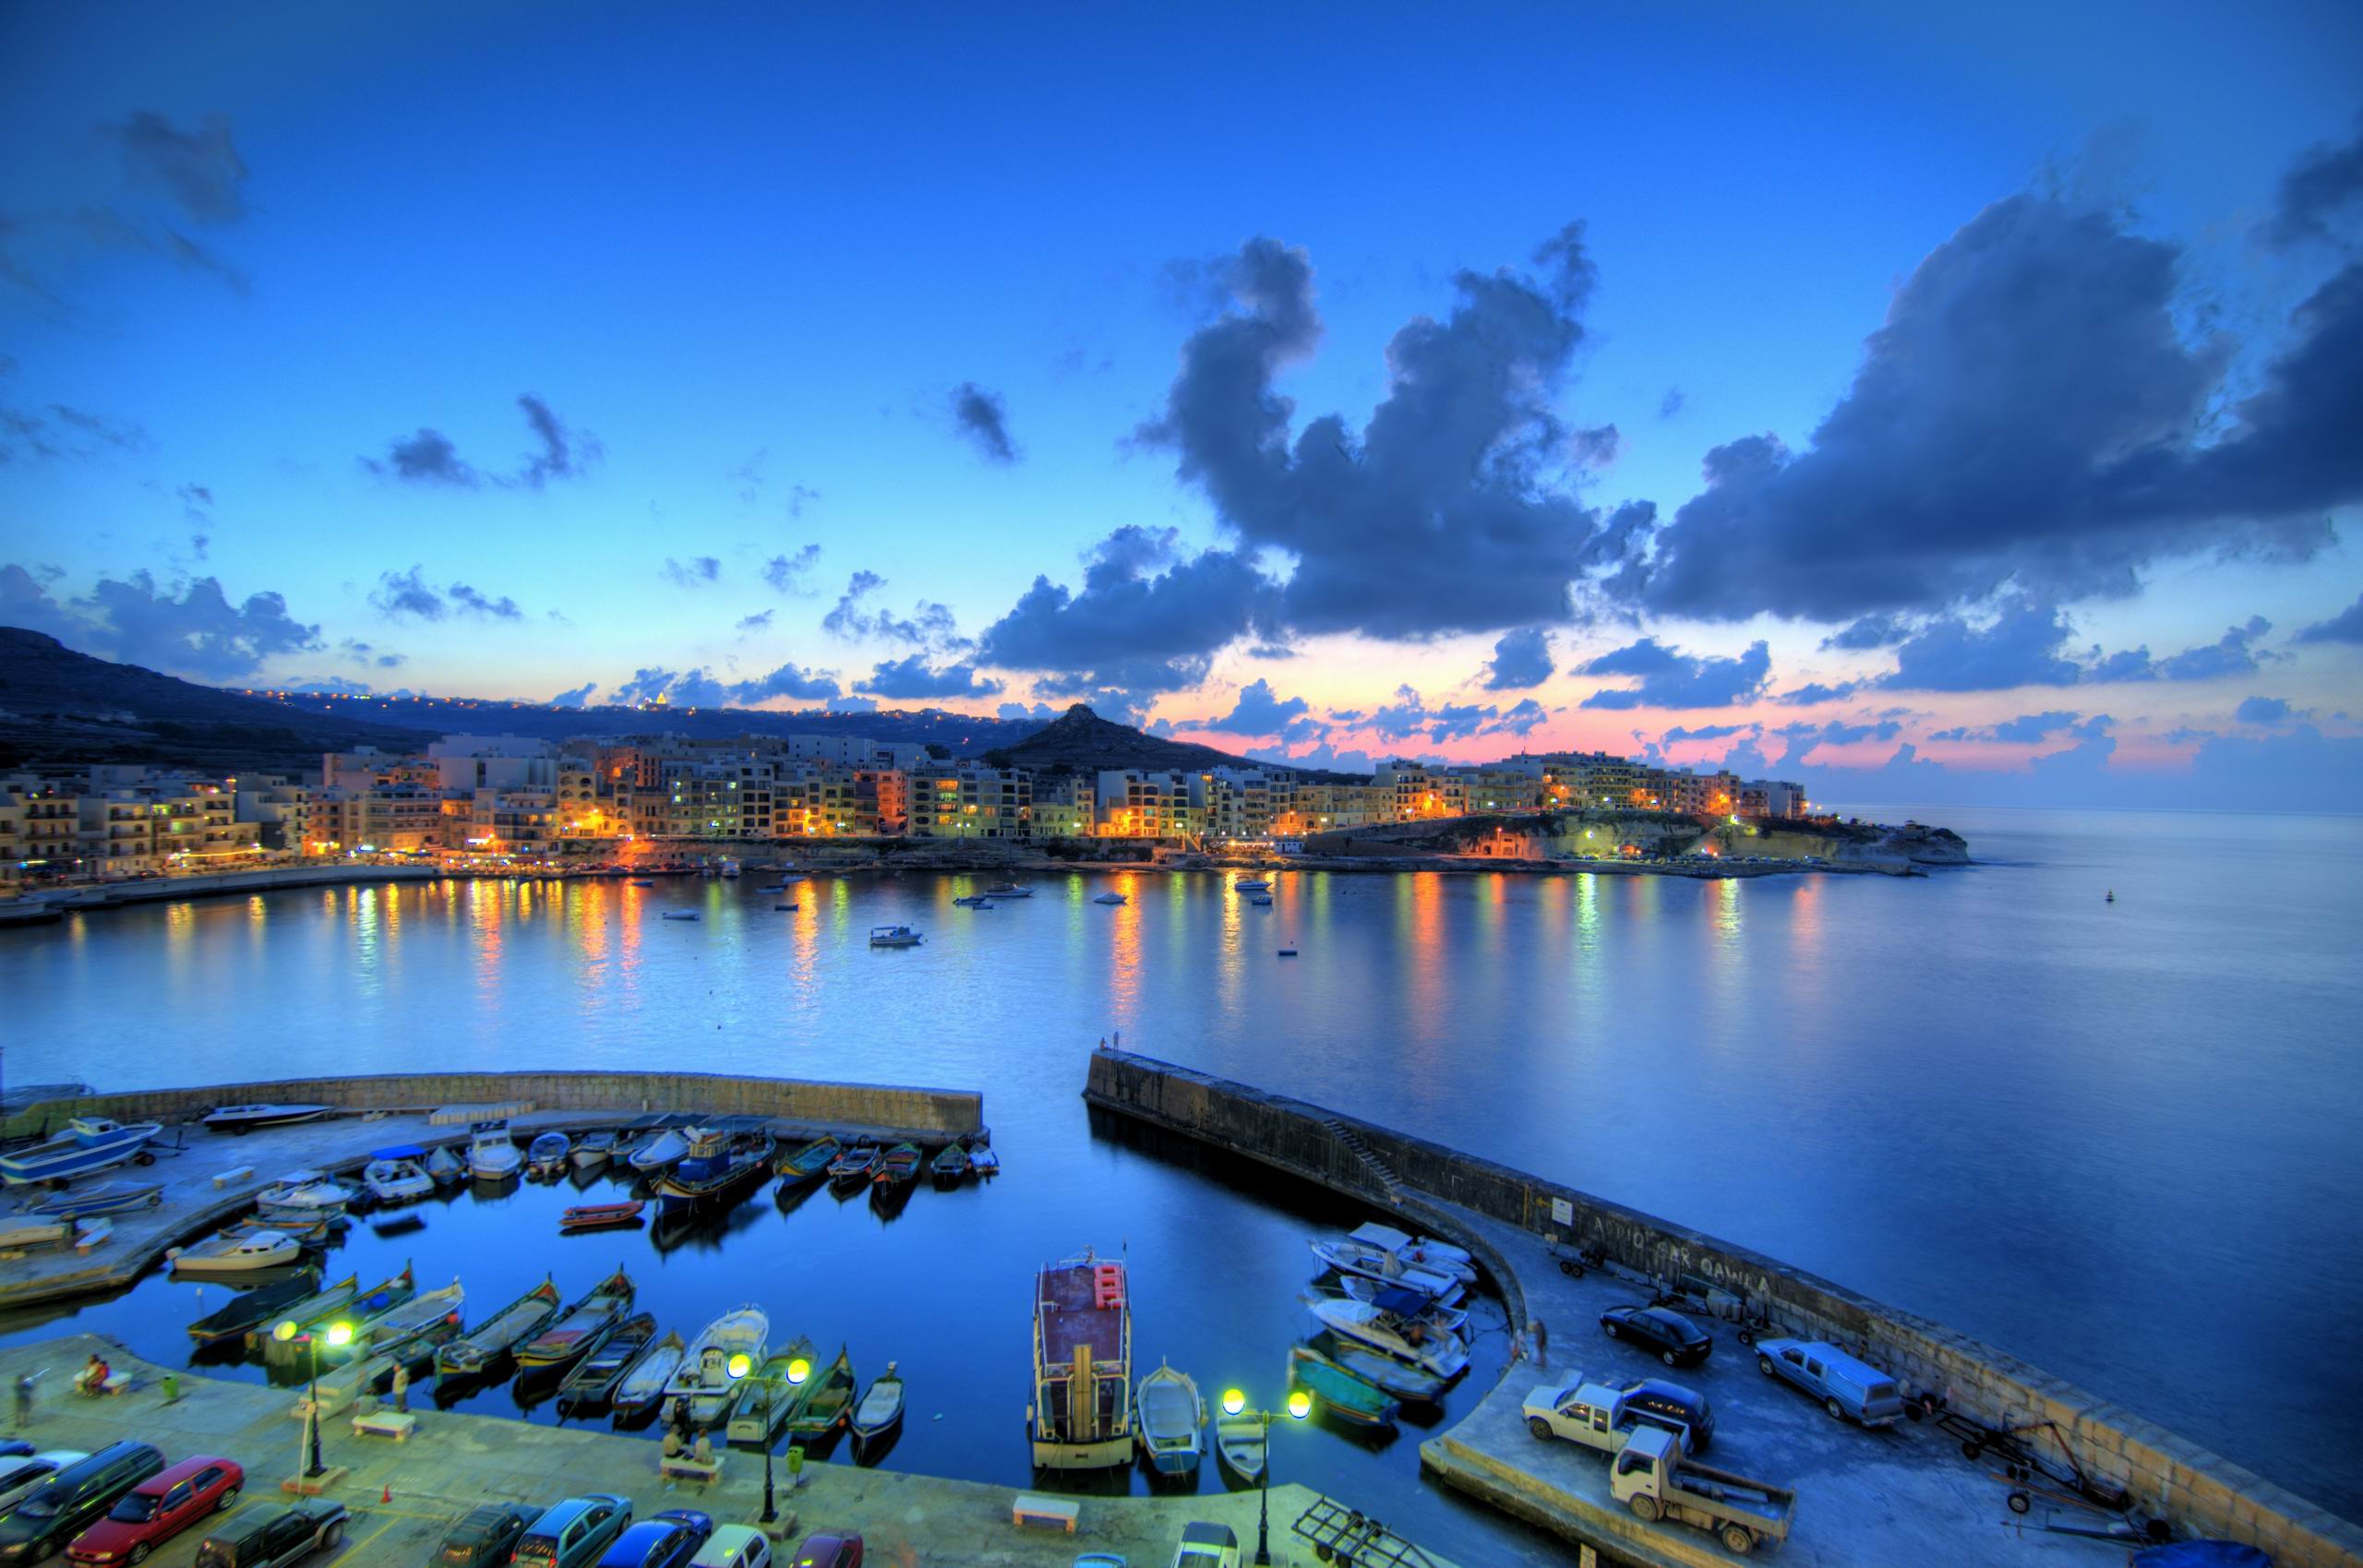 HD Wallpaper Boats Cars Light Malta Ocean Full Desktop Image By